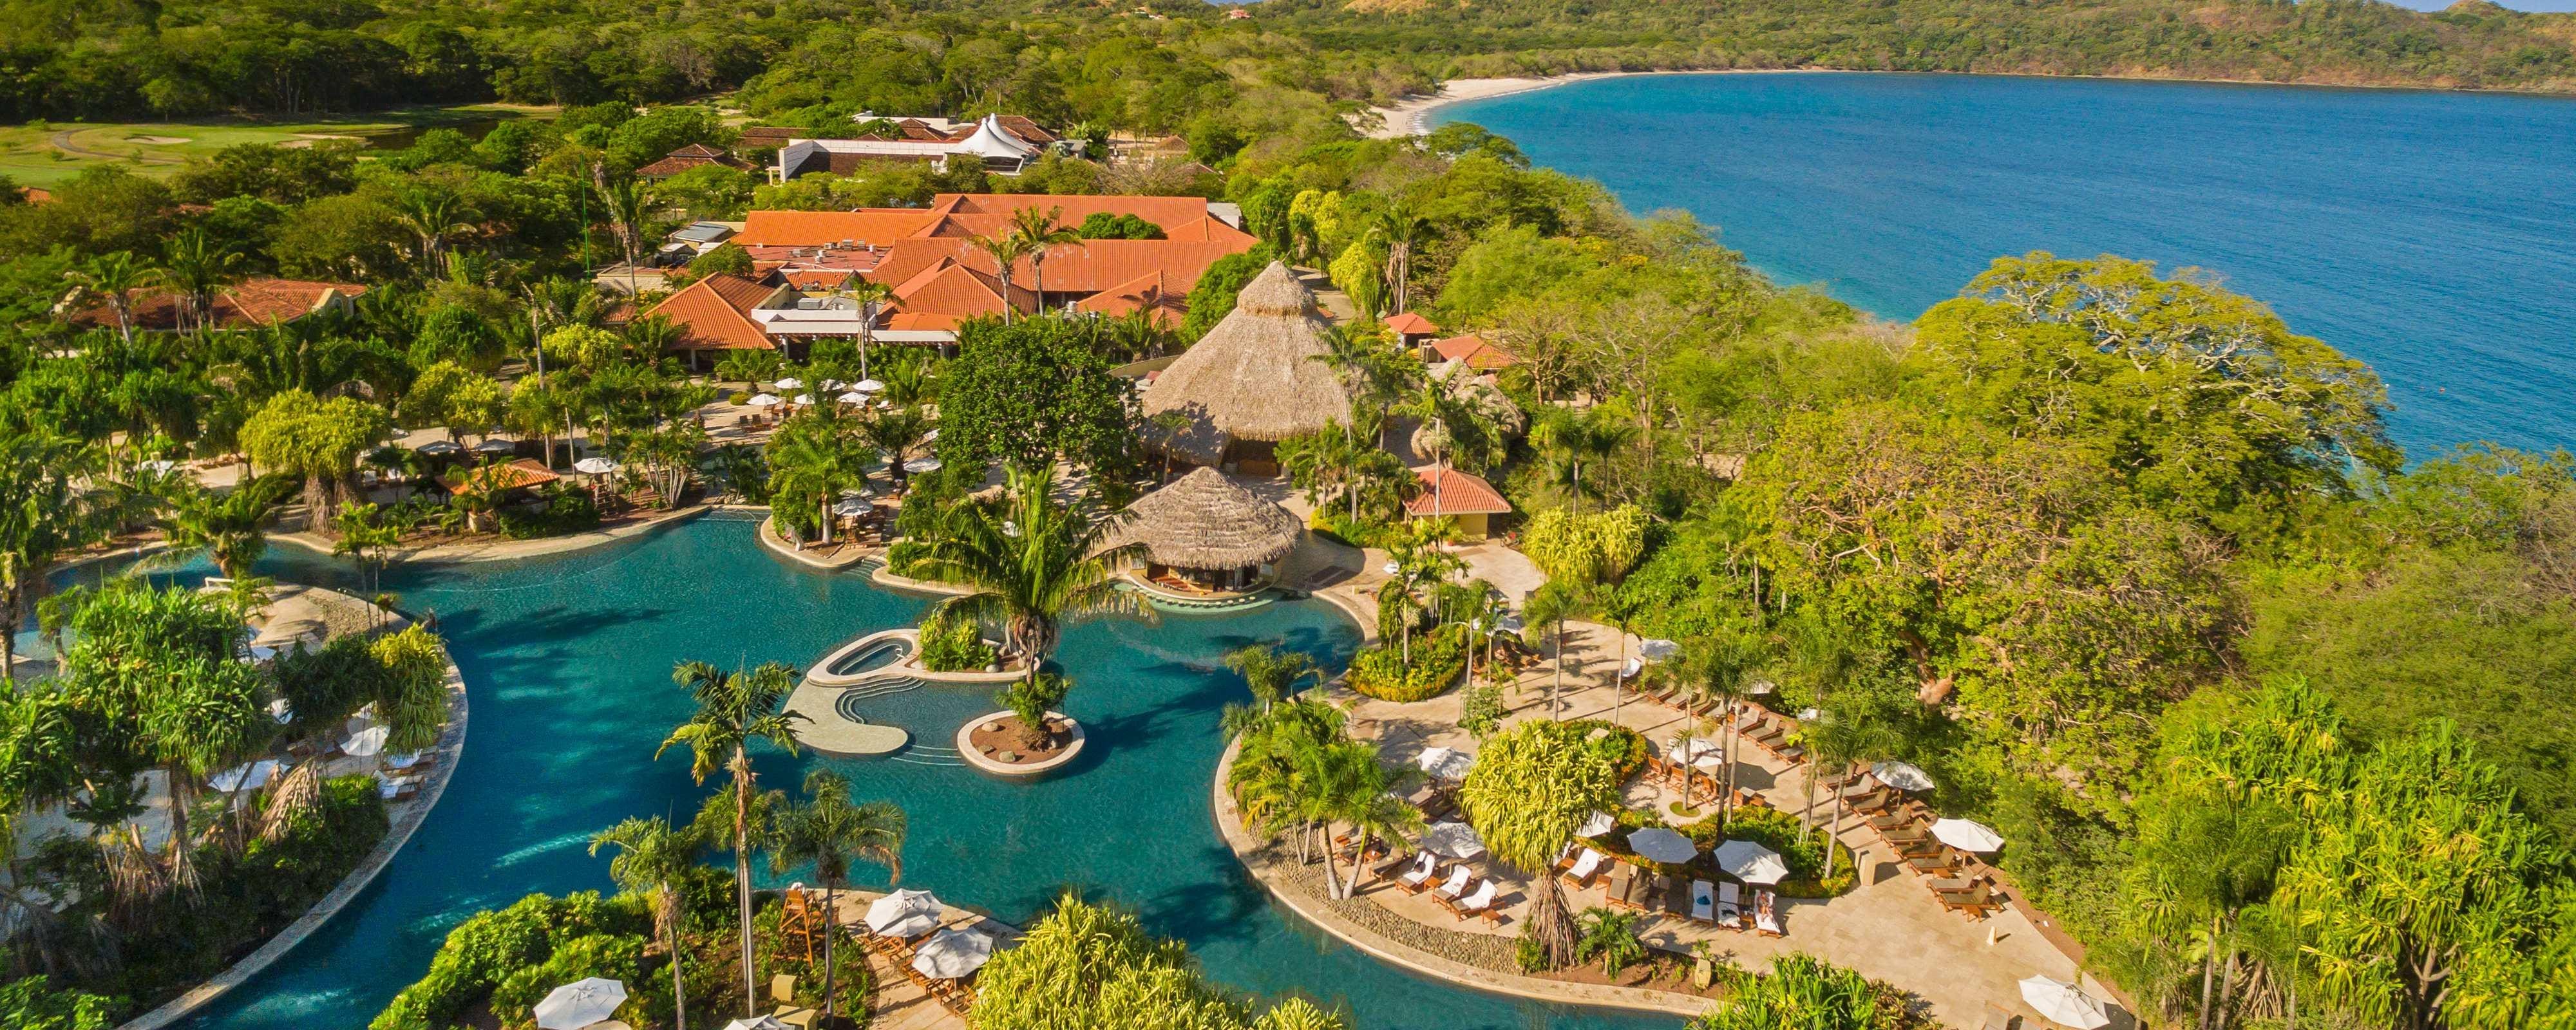 Costa rica all-inclusive family resorts